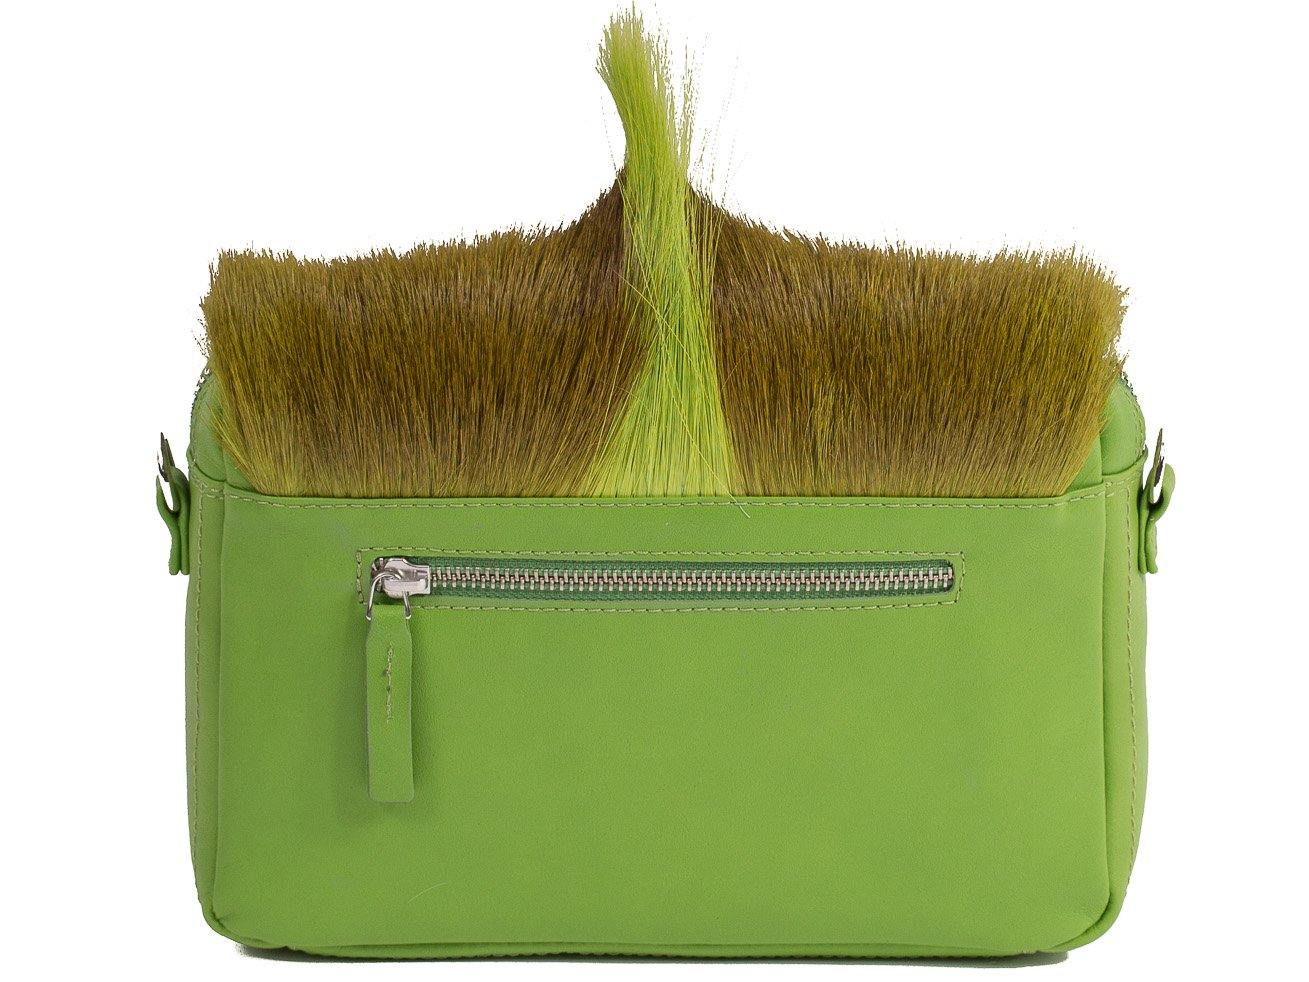 sherene melinda springbok hair-on-hide lime green leather shoulder bag Fan back